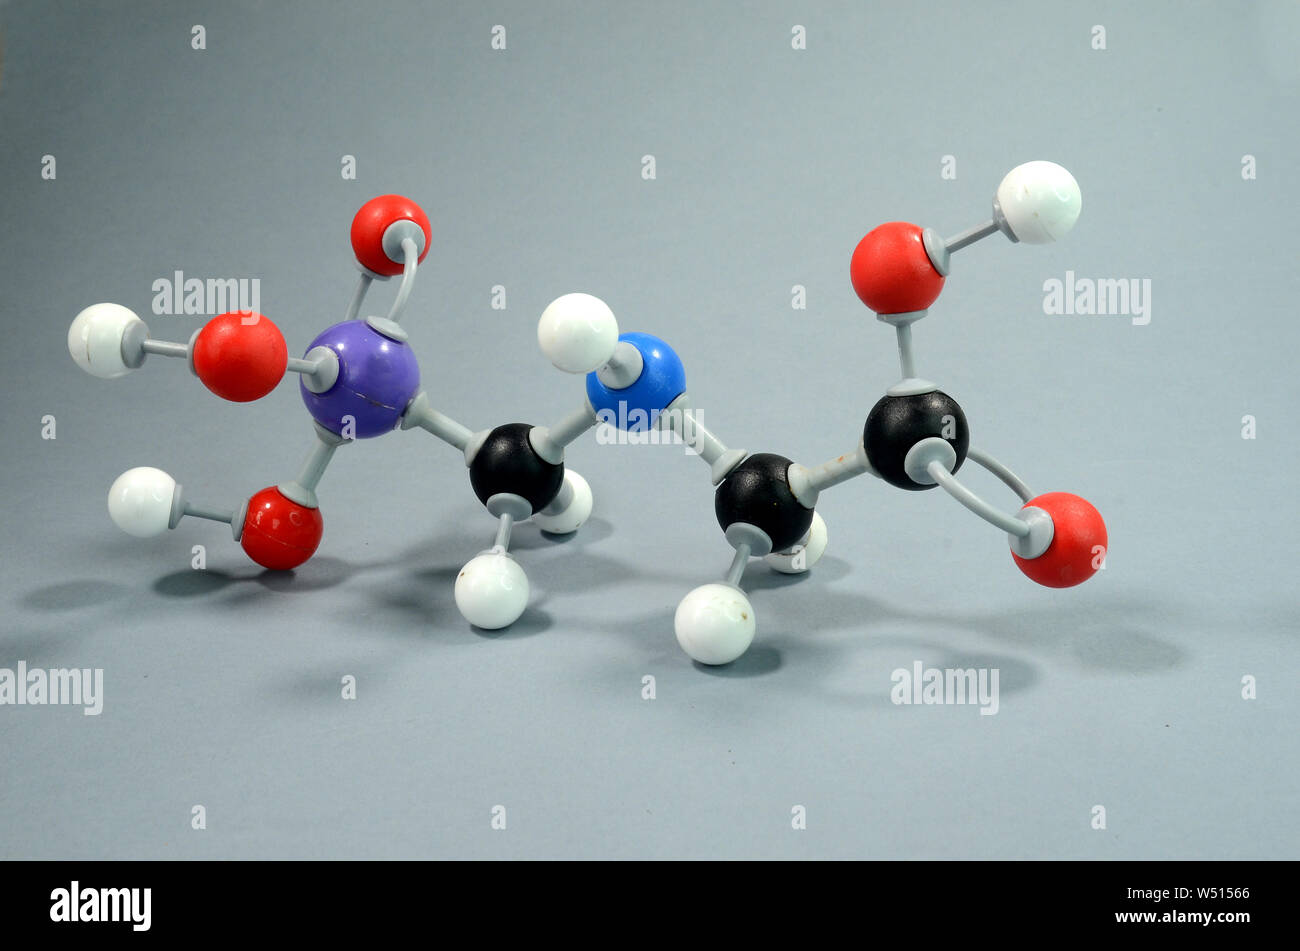 Molécule Modèle de Glyphosphate, une politique commune de pesticid. Le noir est le carbone, le rouge est l'oxygène, l'hydrogène est blanc, bleu est Nirogen, et le violet est le phosphore. Banque D'Images